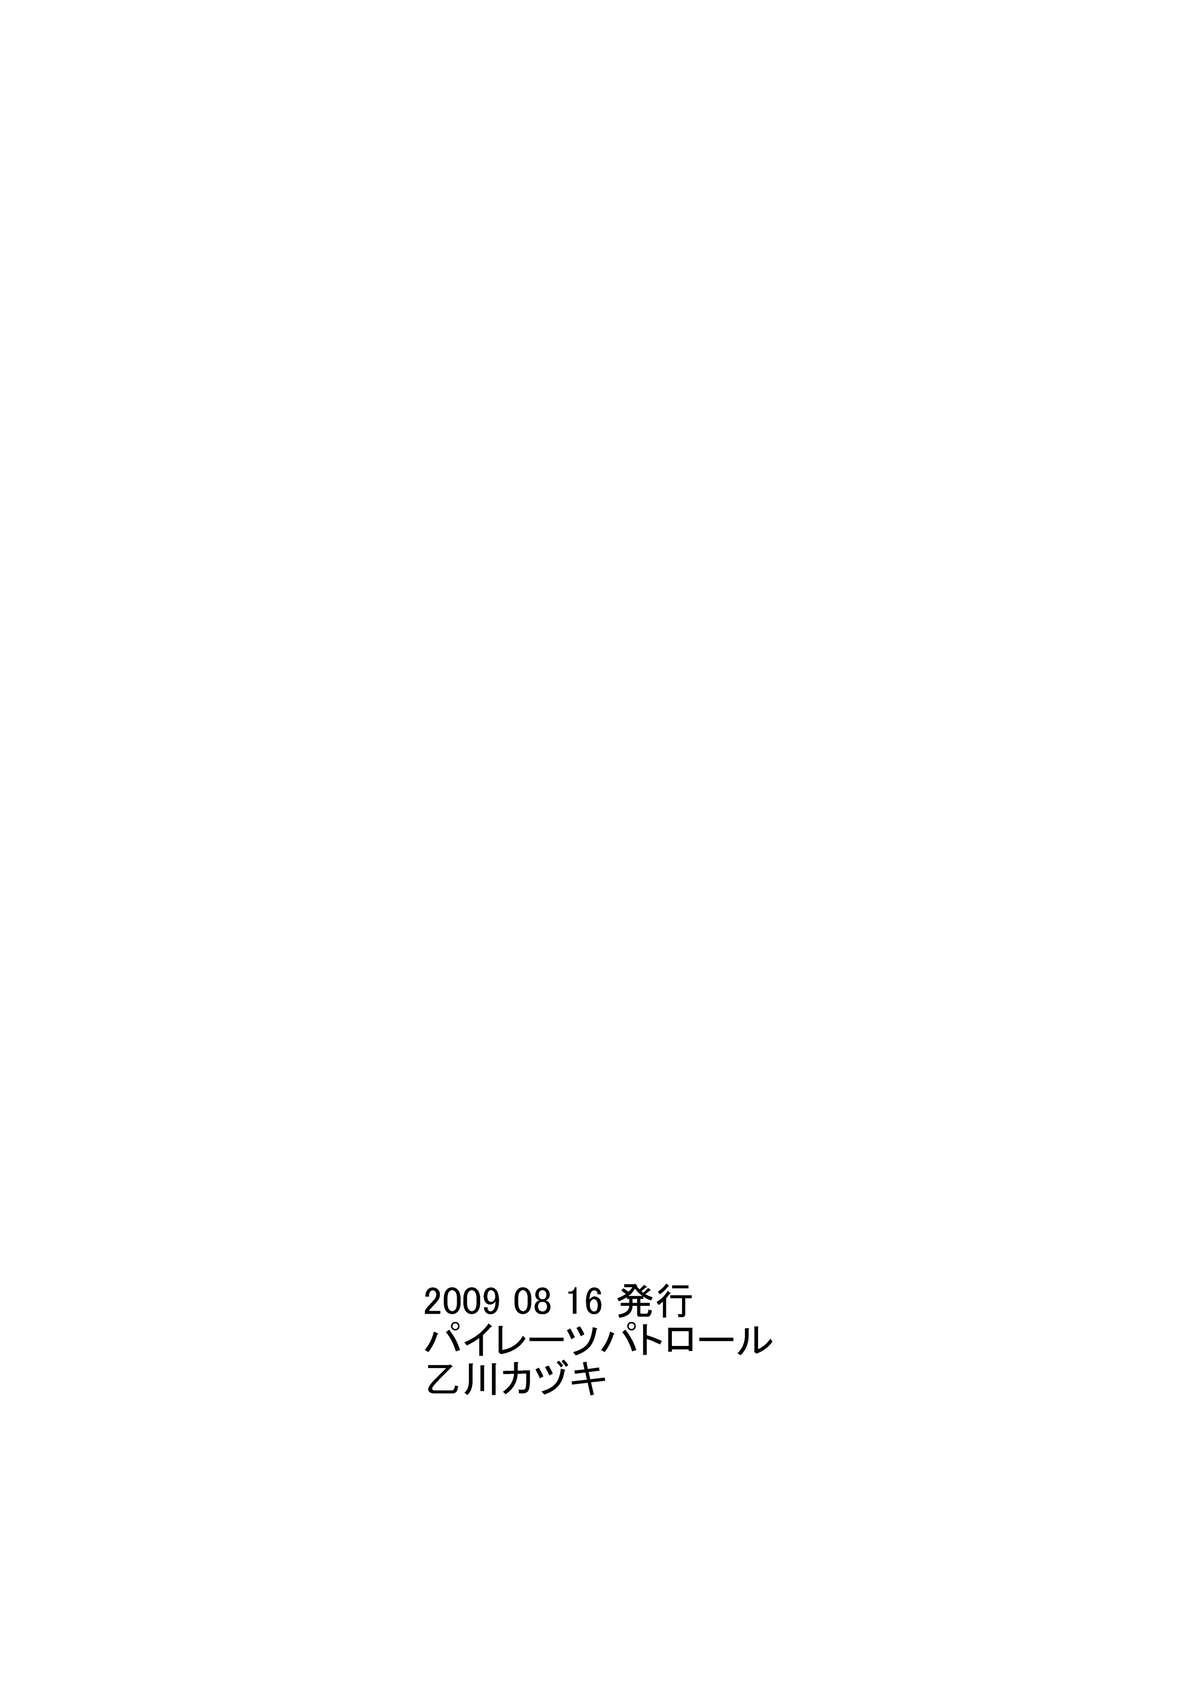 (C76) [パイレーツパトロール (乙川カヅキ)] unchi娘^3